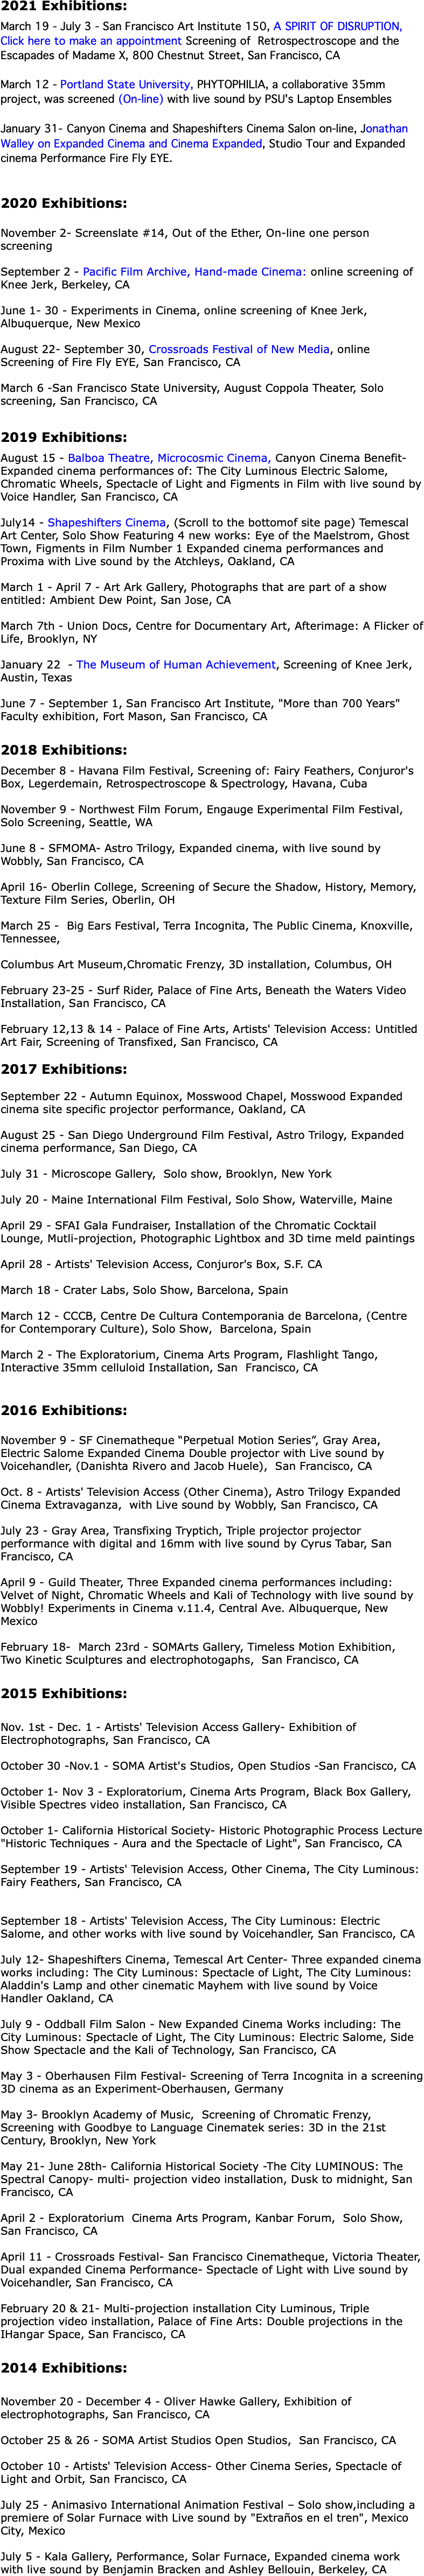 2021 Exhibitions: